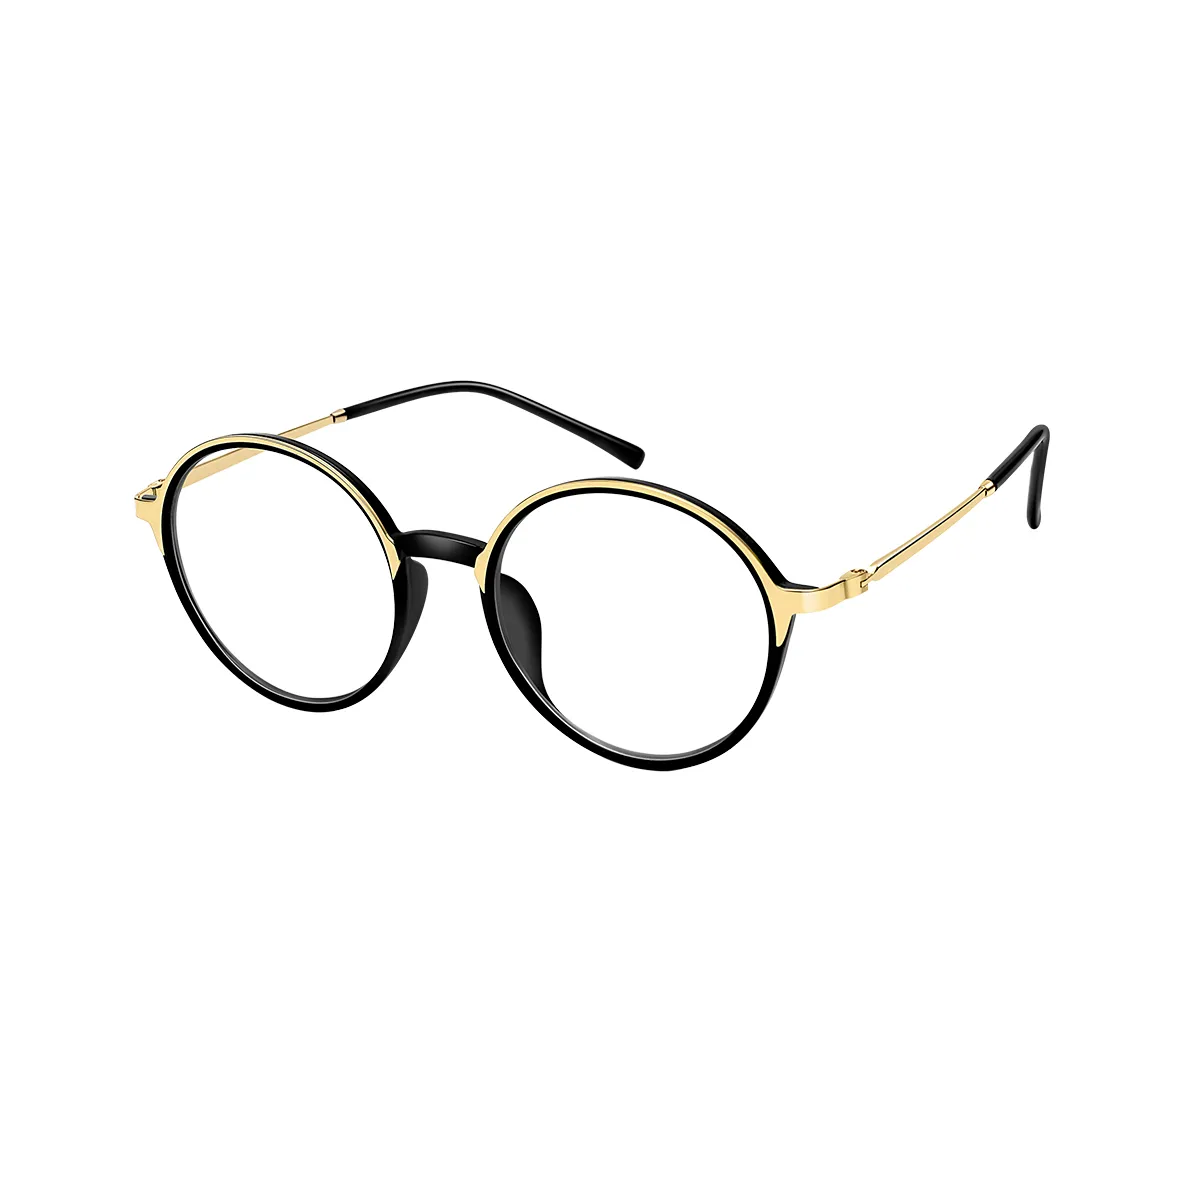 Laverne - Round Black-Gold Glasses for Men & Women - EFE